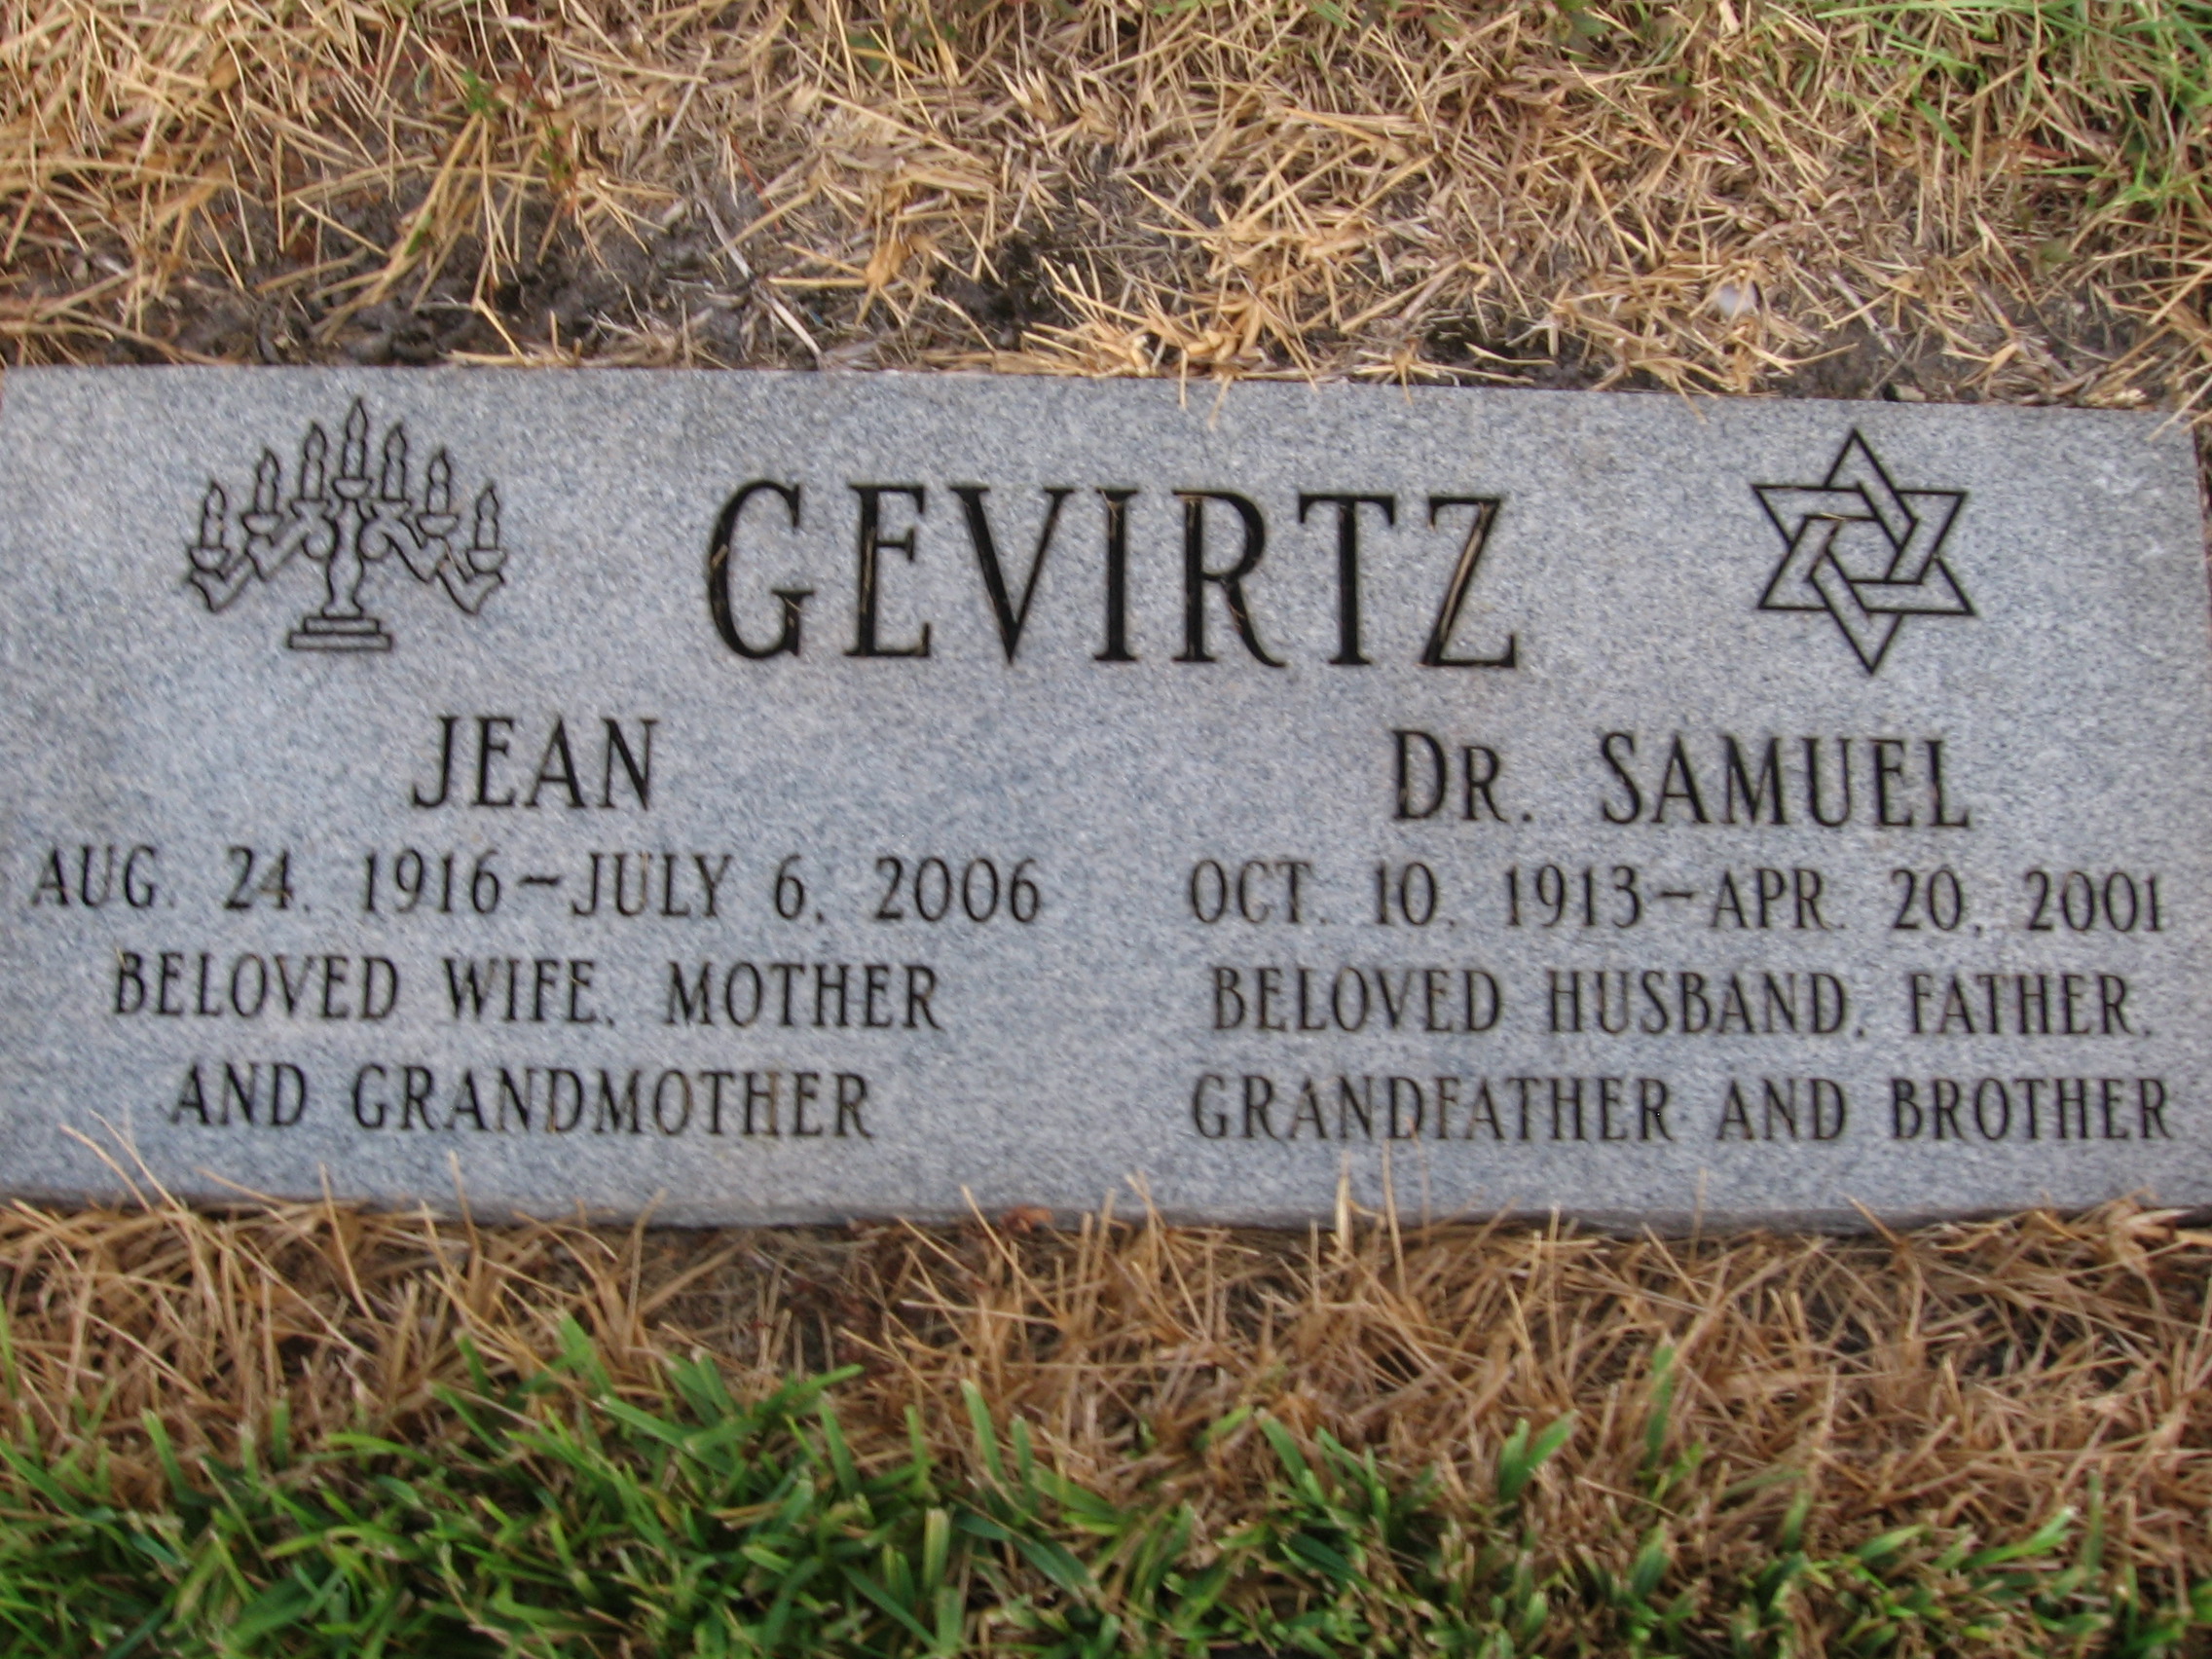 Dr Samuel Gevirtz